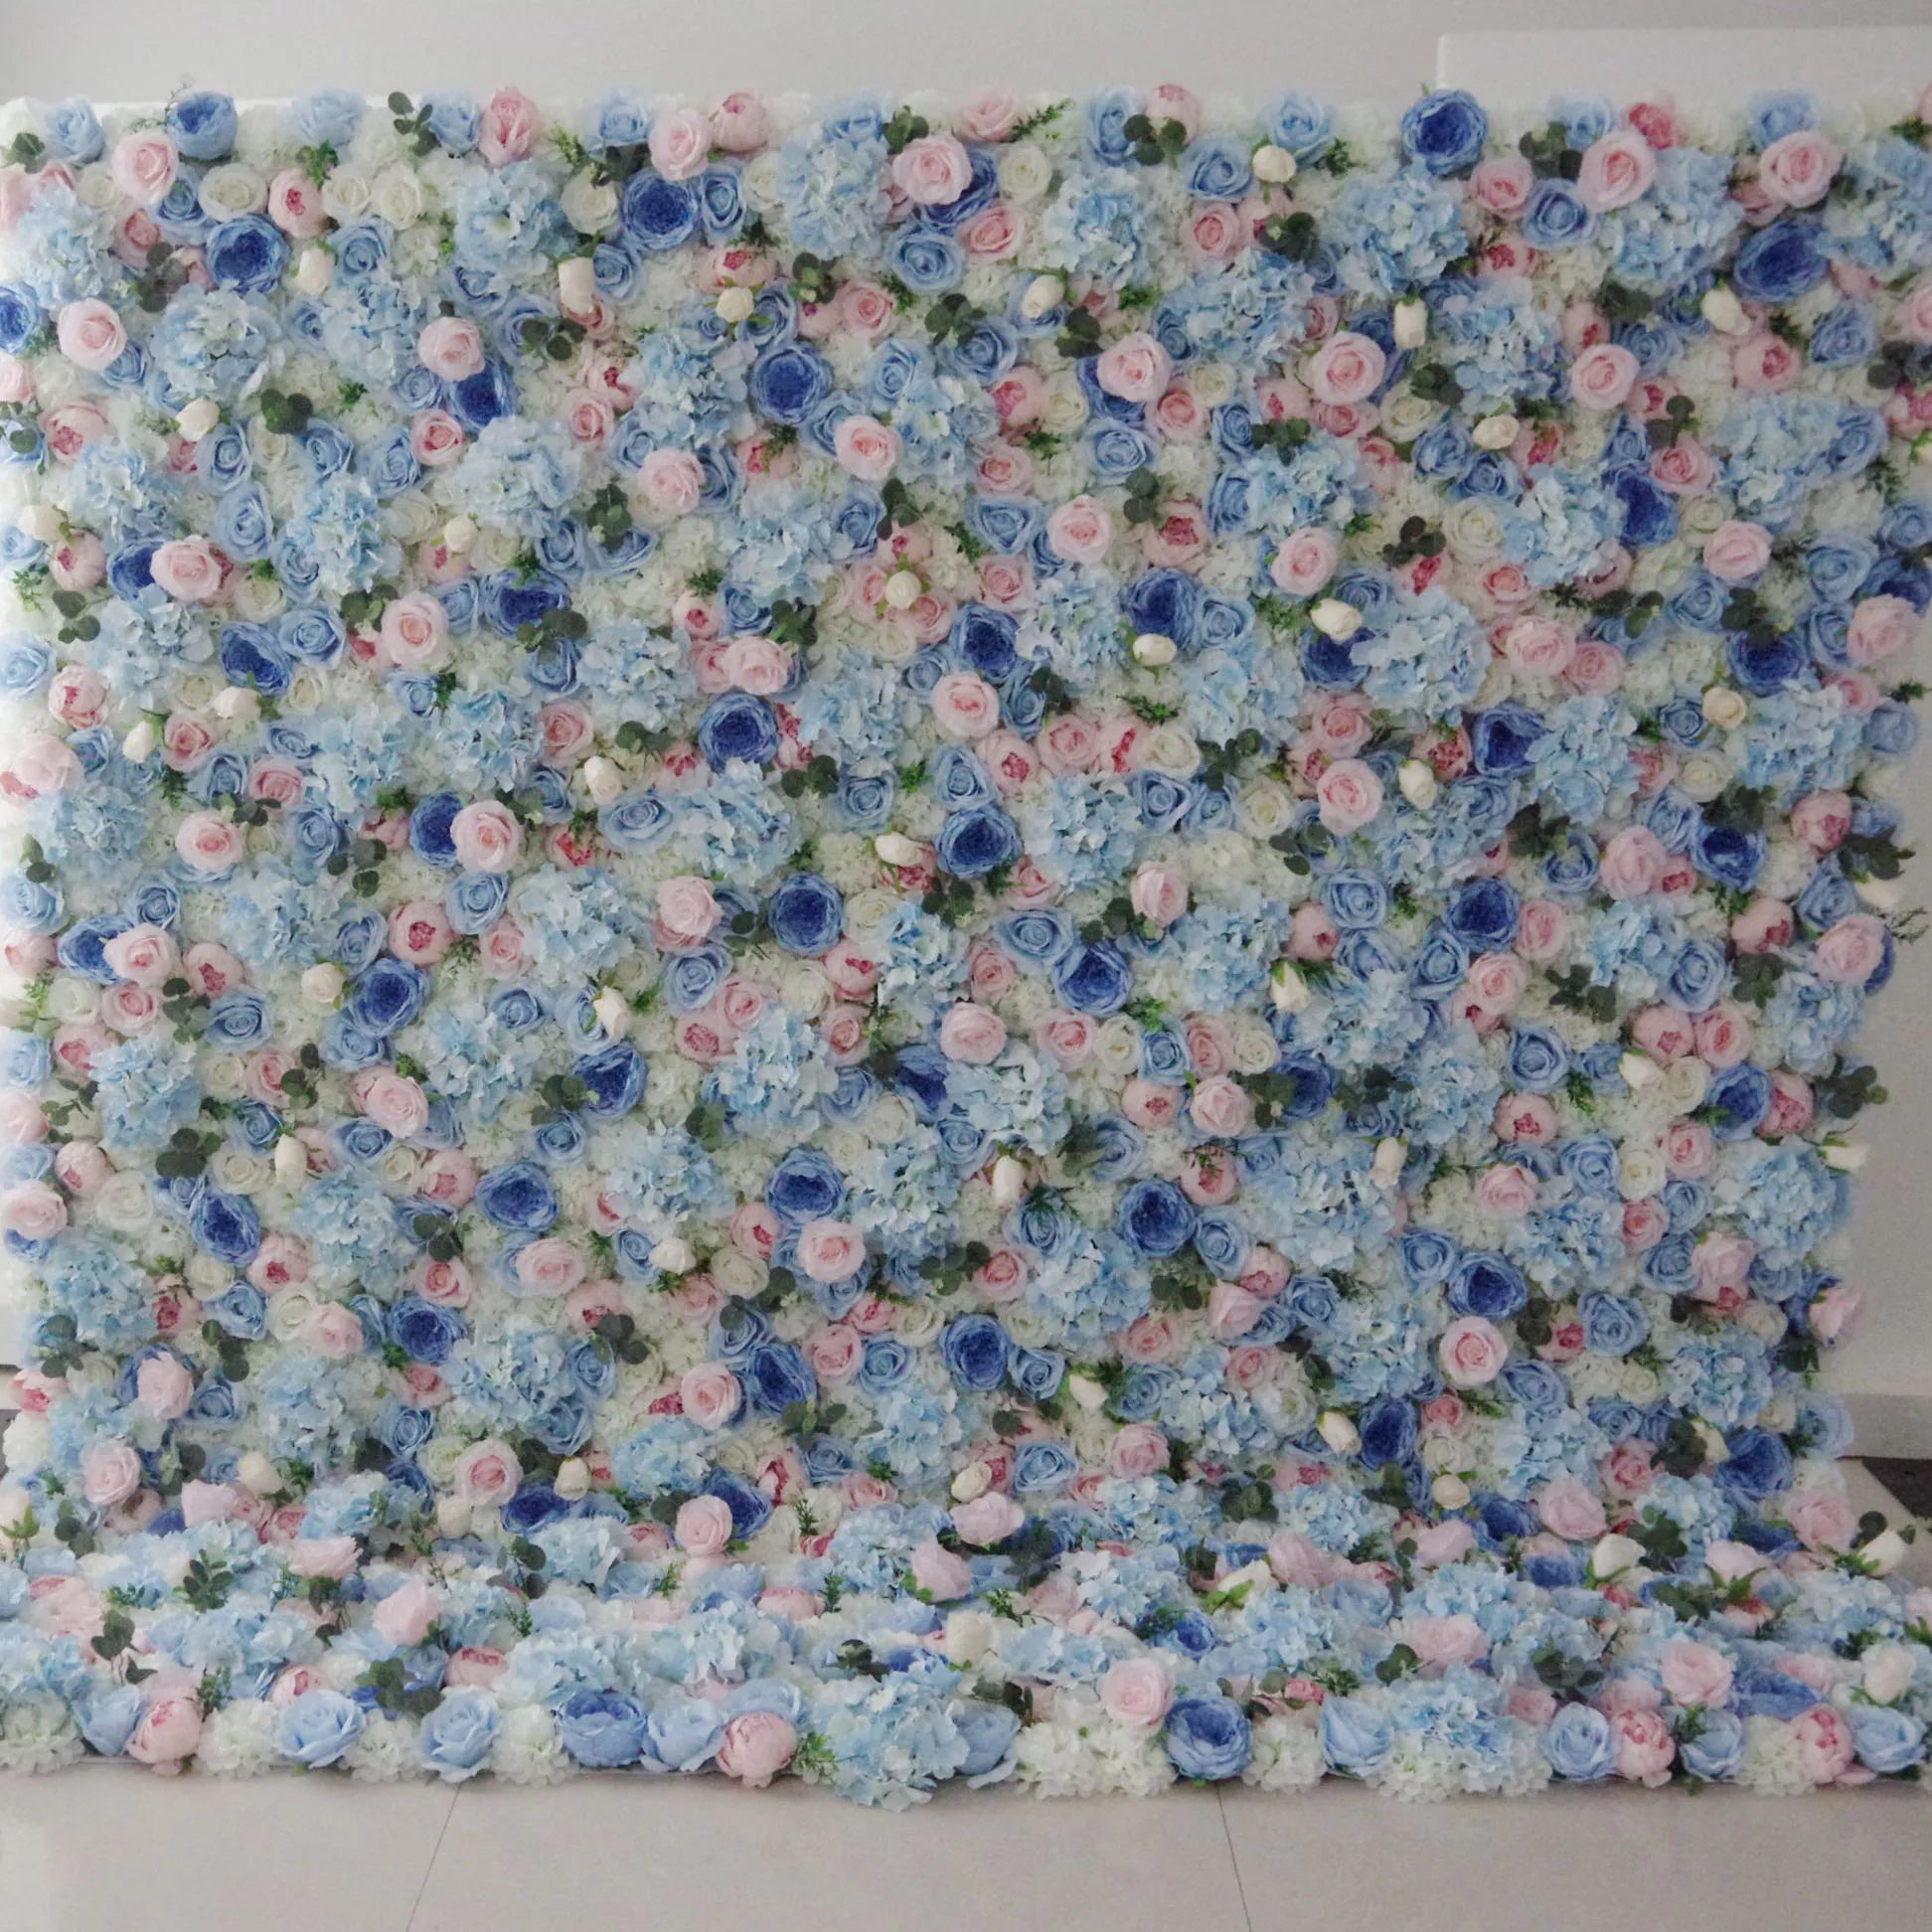 Valar Flowers Roll Up Tissu Artificiel Mixte Bleu Bébé, Pinky et Blanc Floral Mur Toile de Fond de Mariage, Décor de Fête Florale, Photographie d'Événement-VF-081 